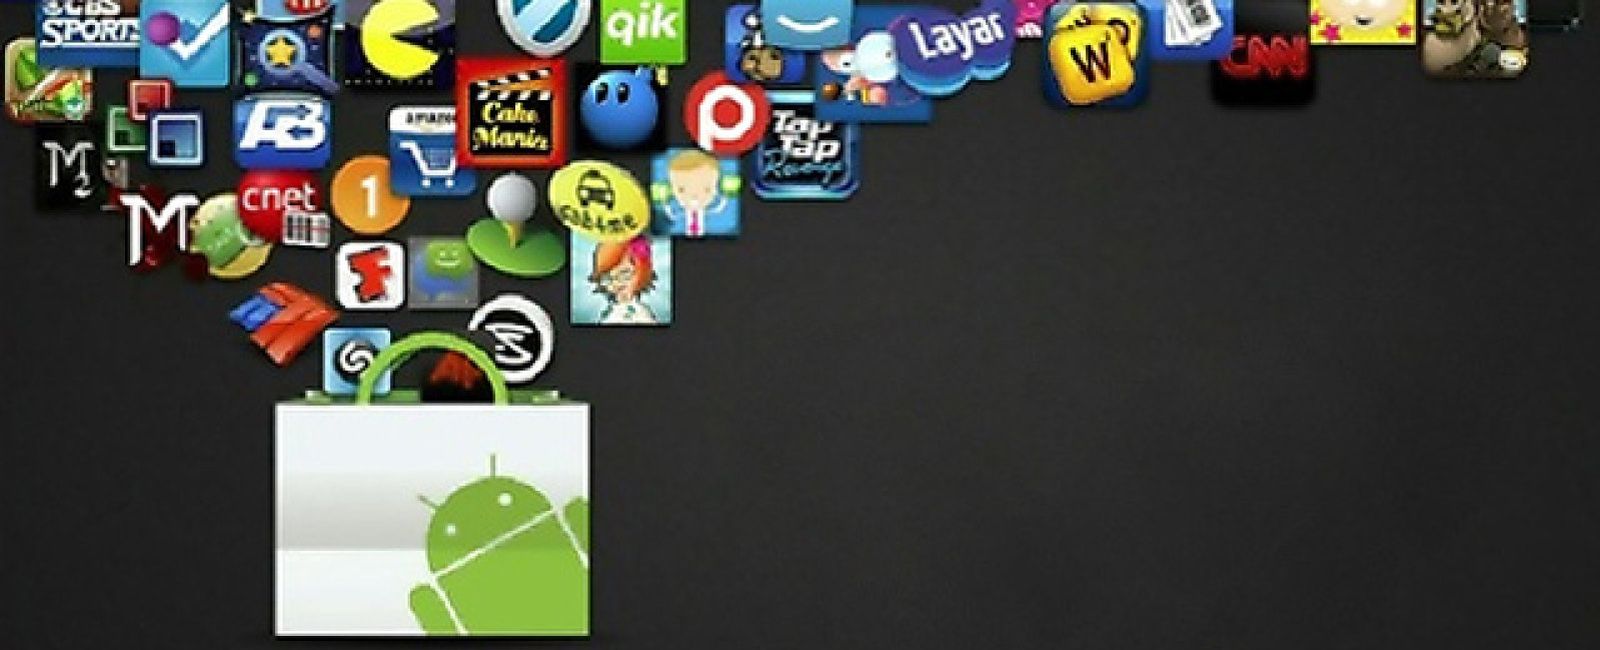 Foto: Blackmart: el submundo de Android donde descargar 'apps' gratis